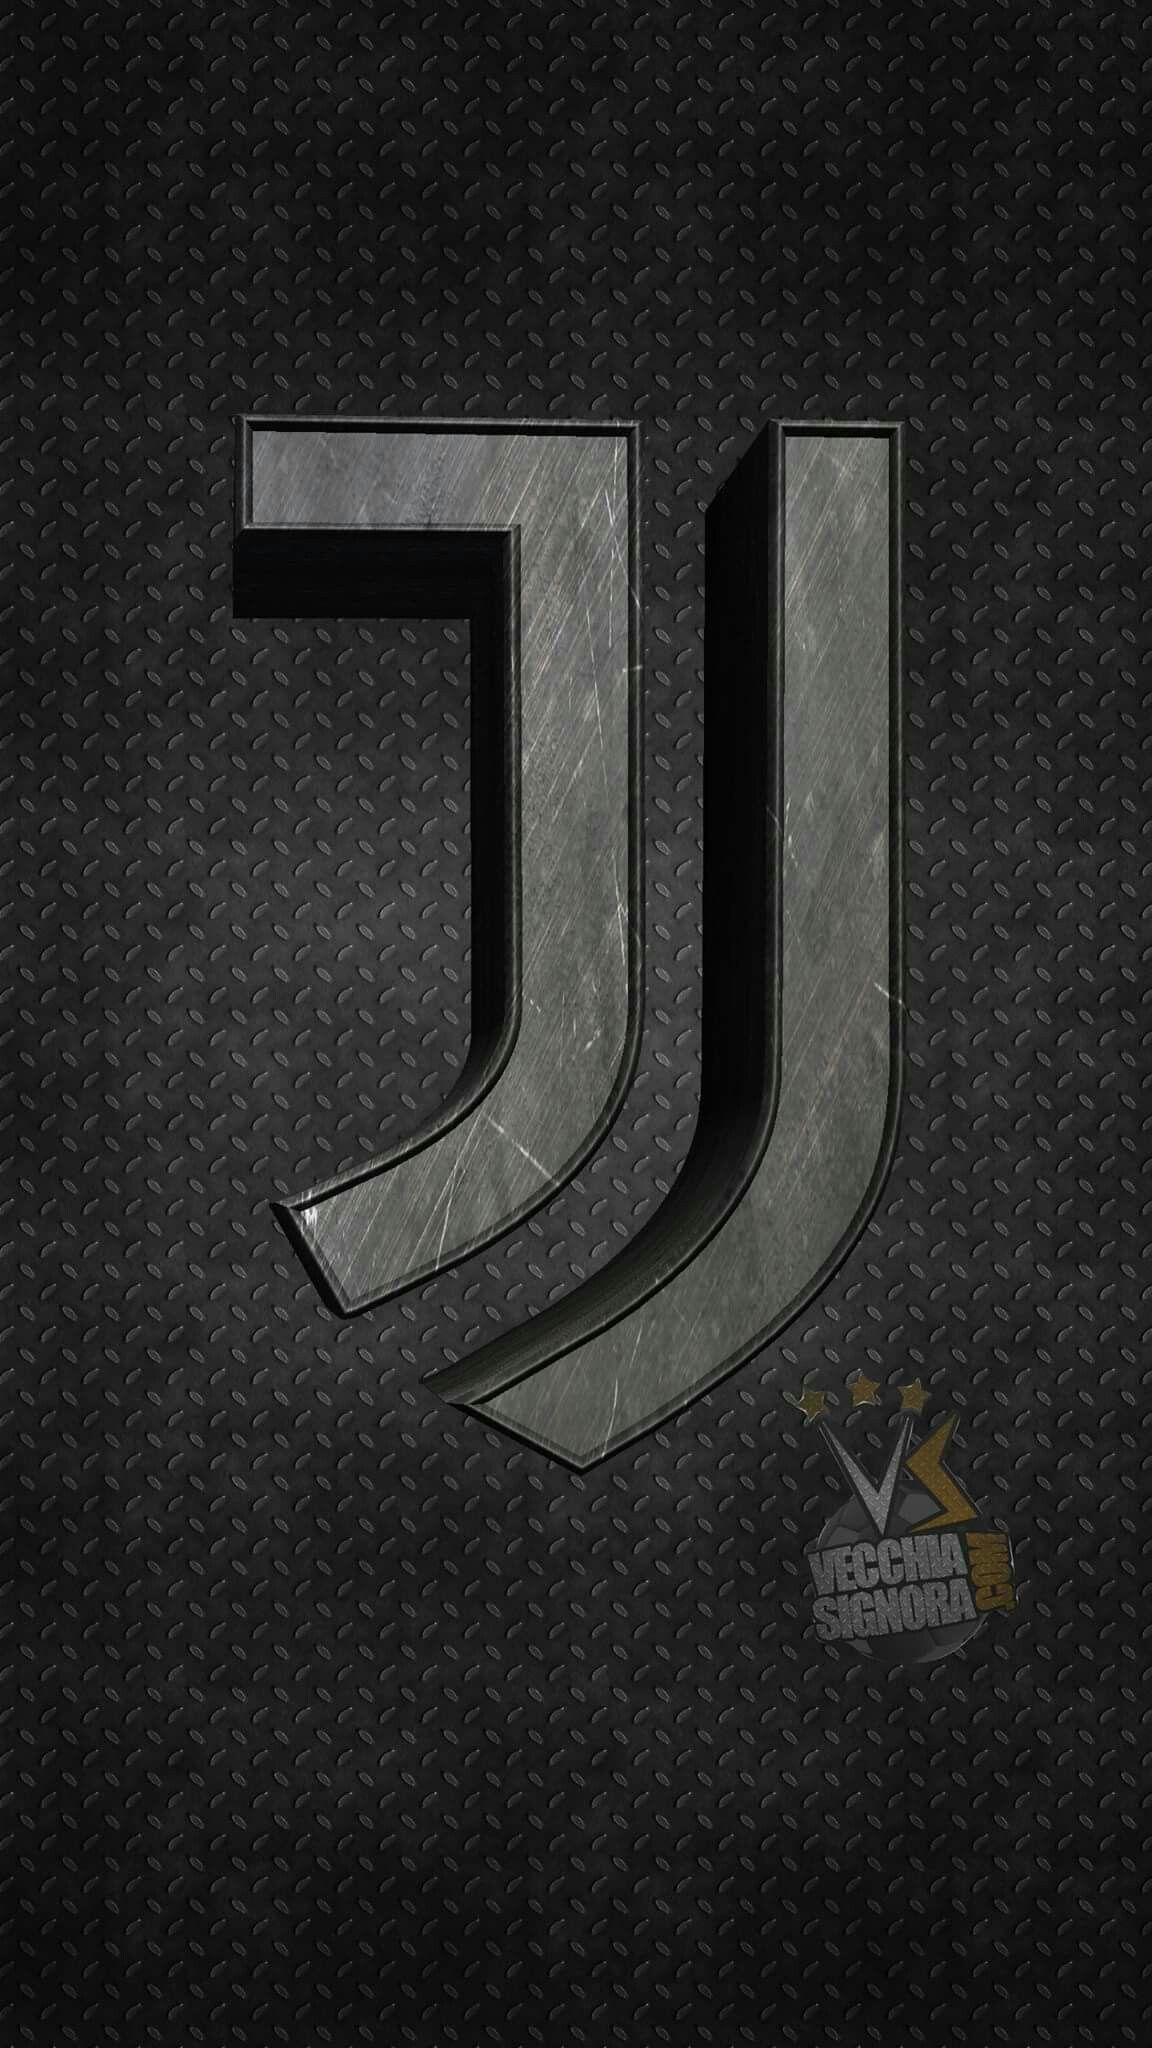 Juventus. Juventus fc, Football